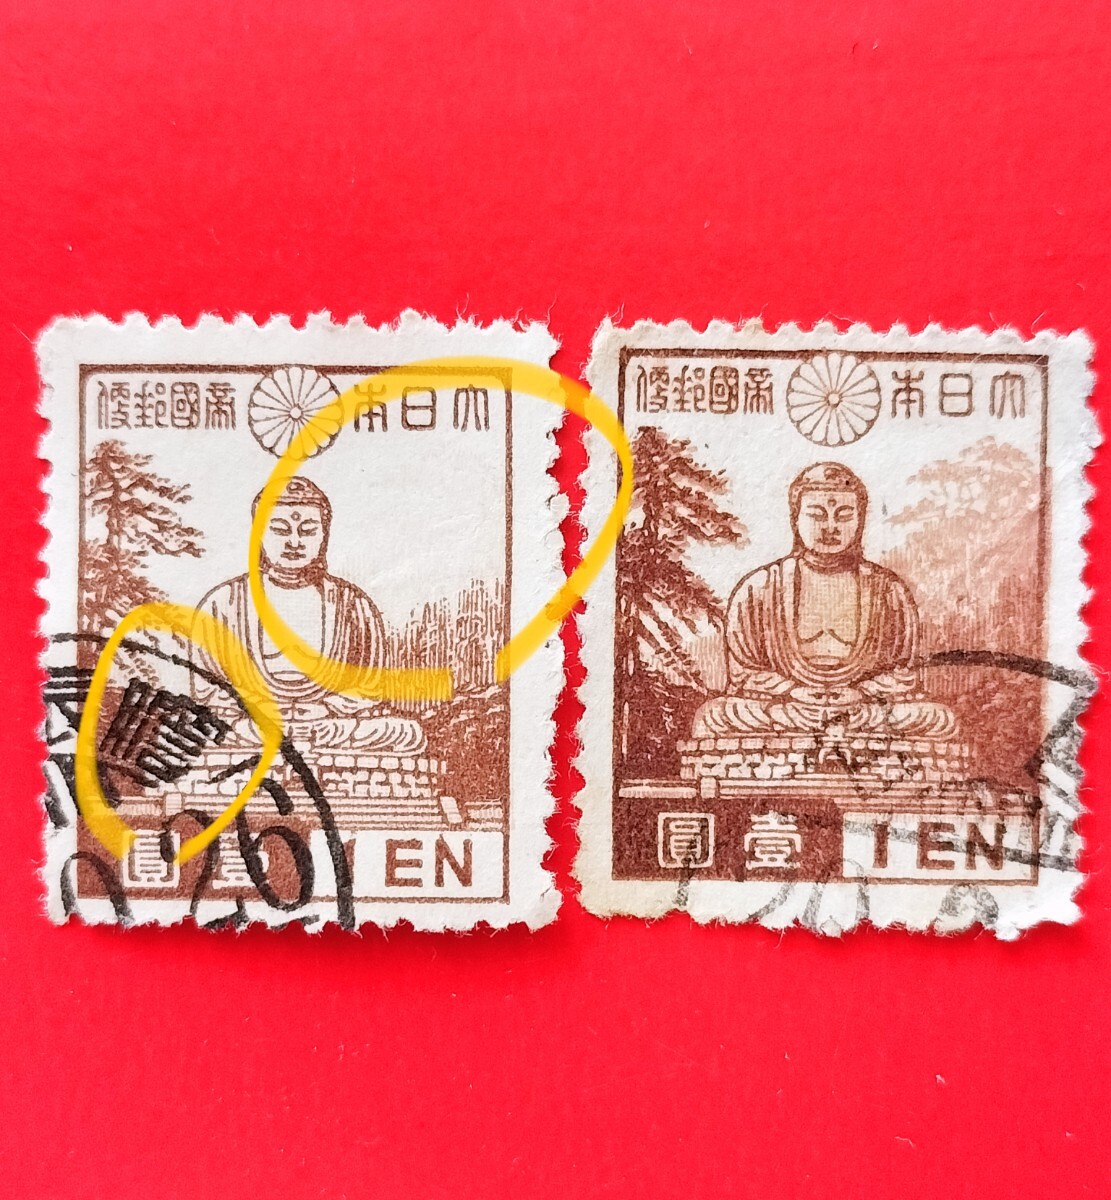  error stamp background forest none Showa era (249)